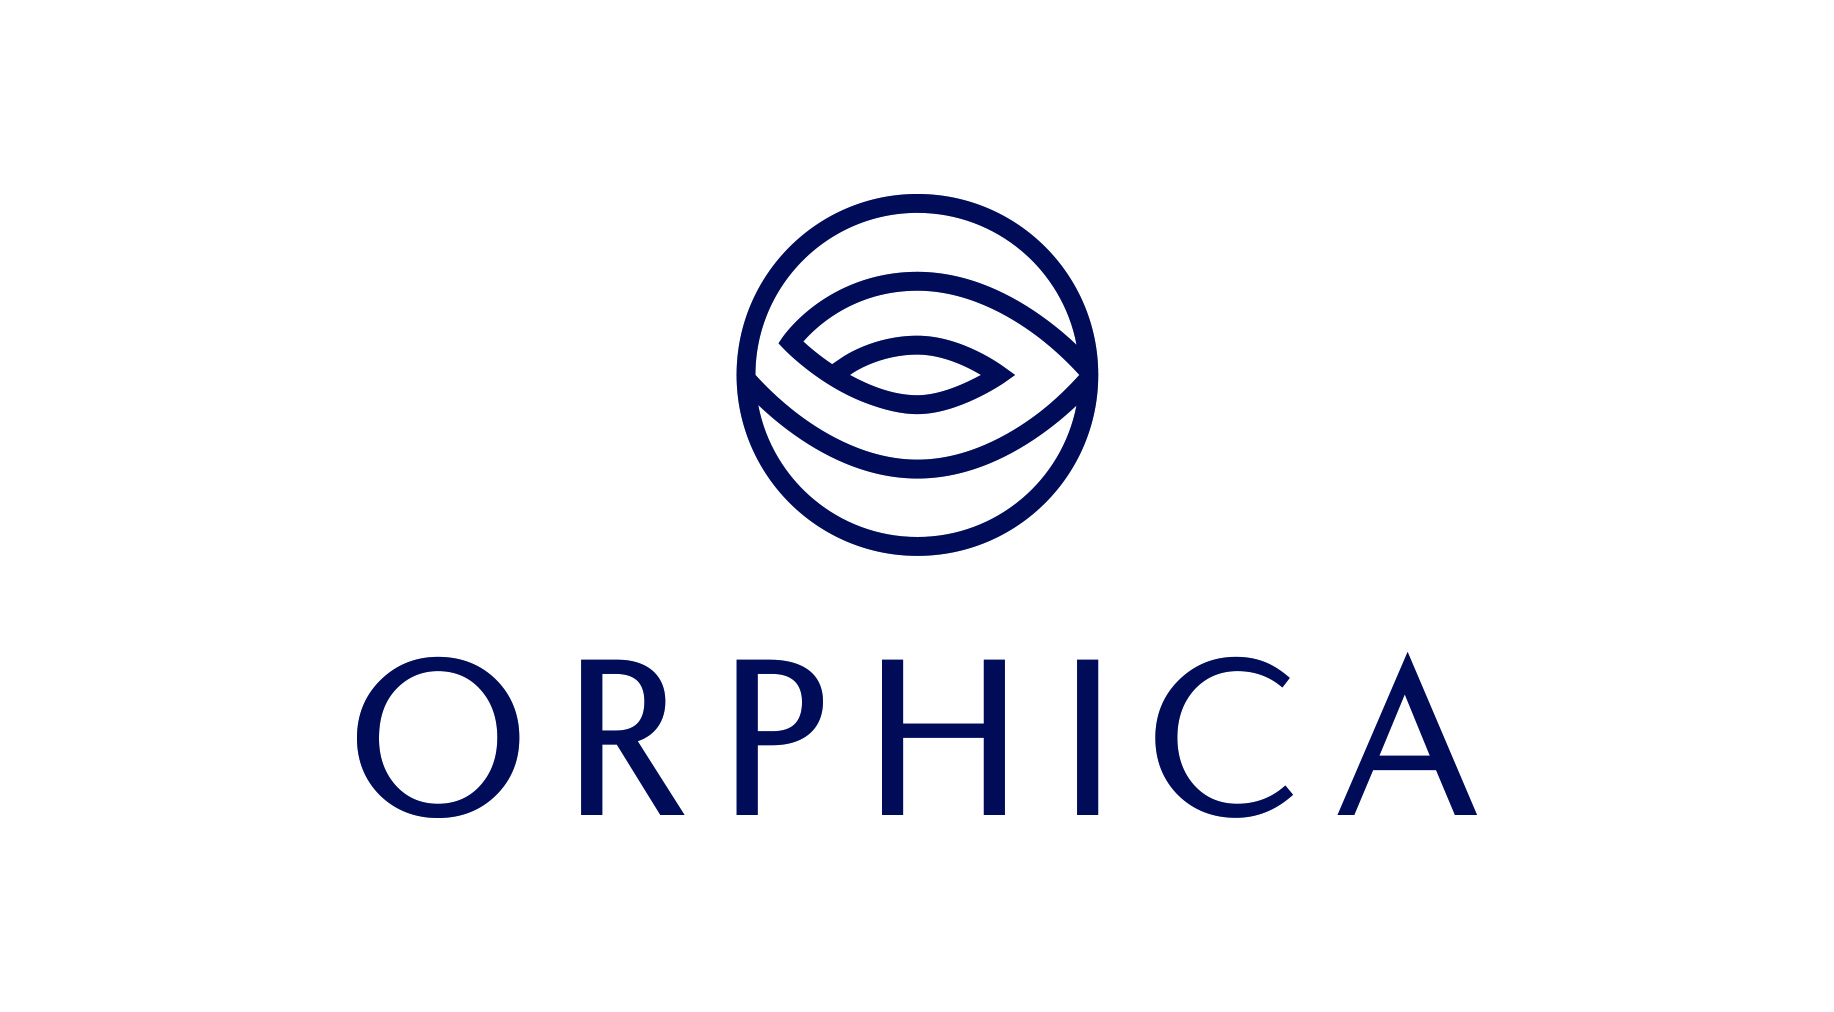 Realash zmienił nazwę swojej marki na ORPHICA